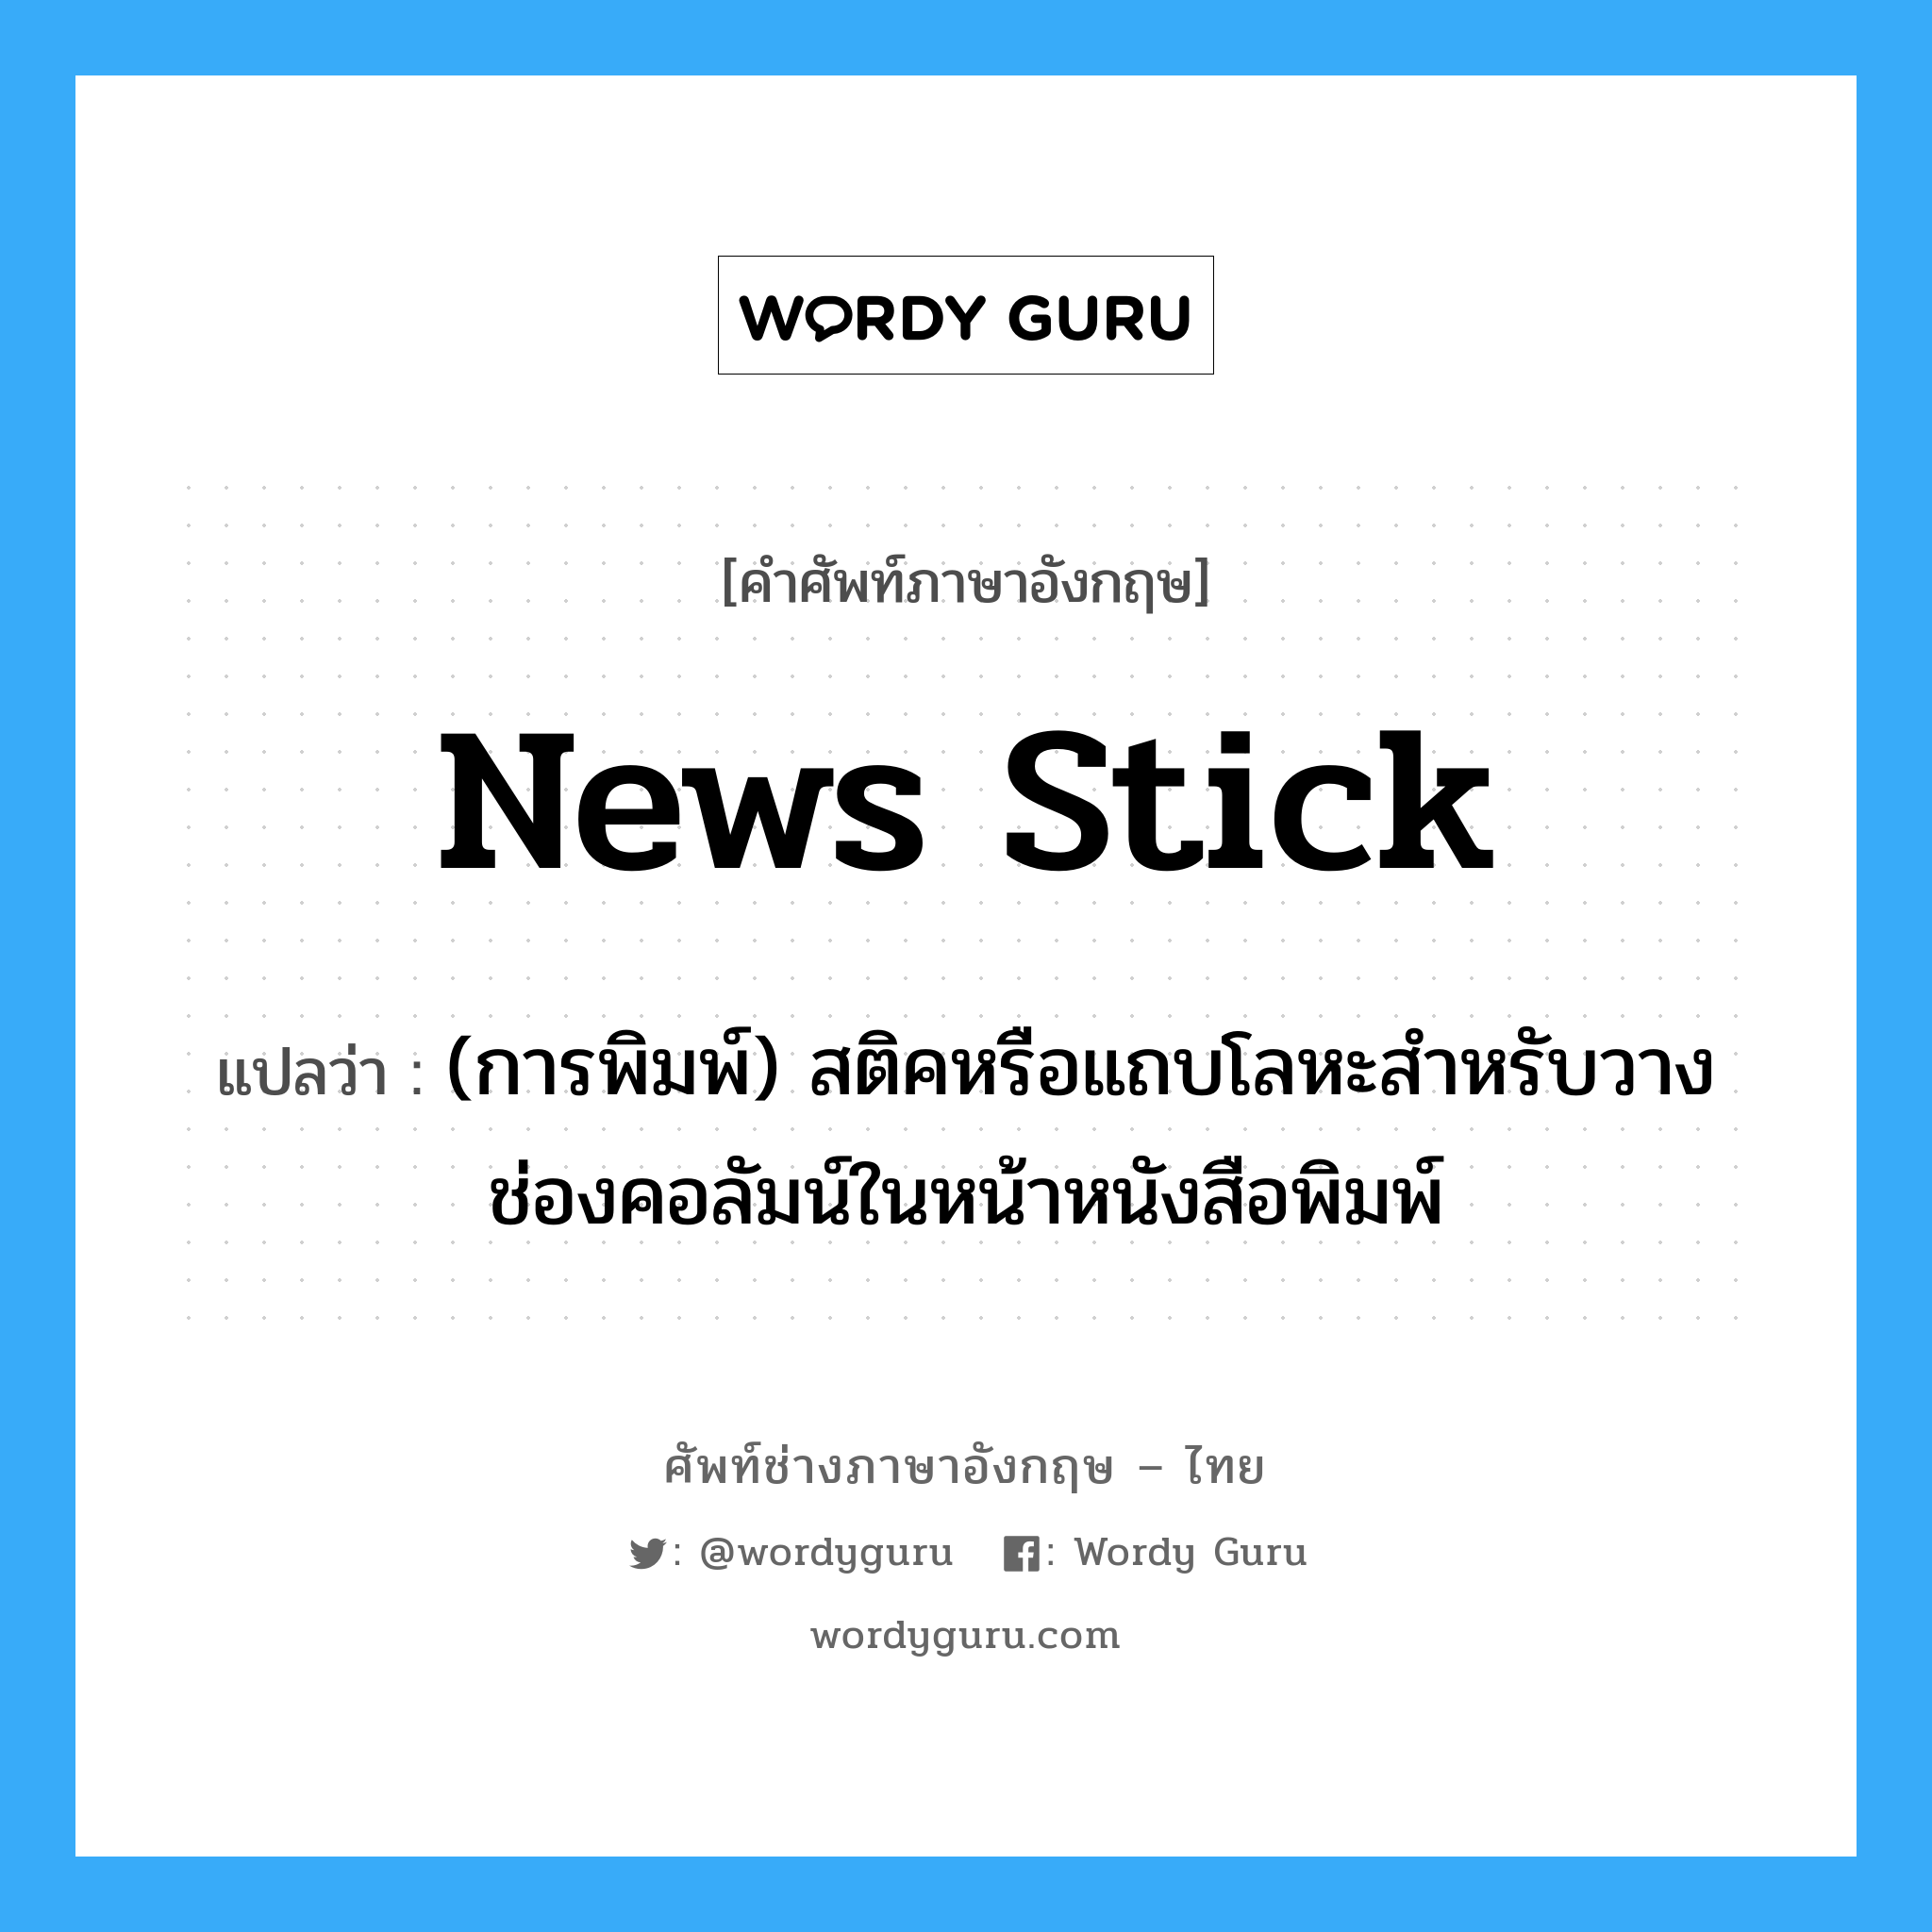 news stick แปลว่า?, คำศัพท์ช่างภาษาอังกฤษ - ไทย news stick คำศัพท์ภาษาอังกฤษ news stick แปลว่า (การพิมพ์) สติคหรือแถบโลหะสำหรับวางช่องคอลัมน์ในหน้าหนังสือพิมพ์